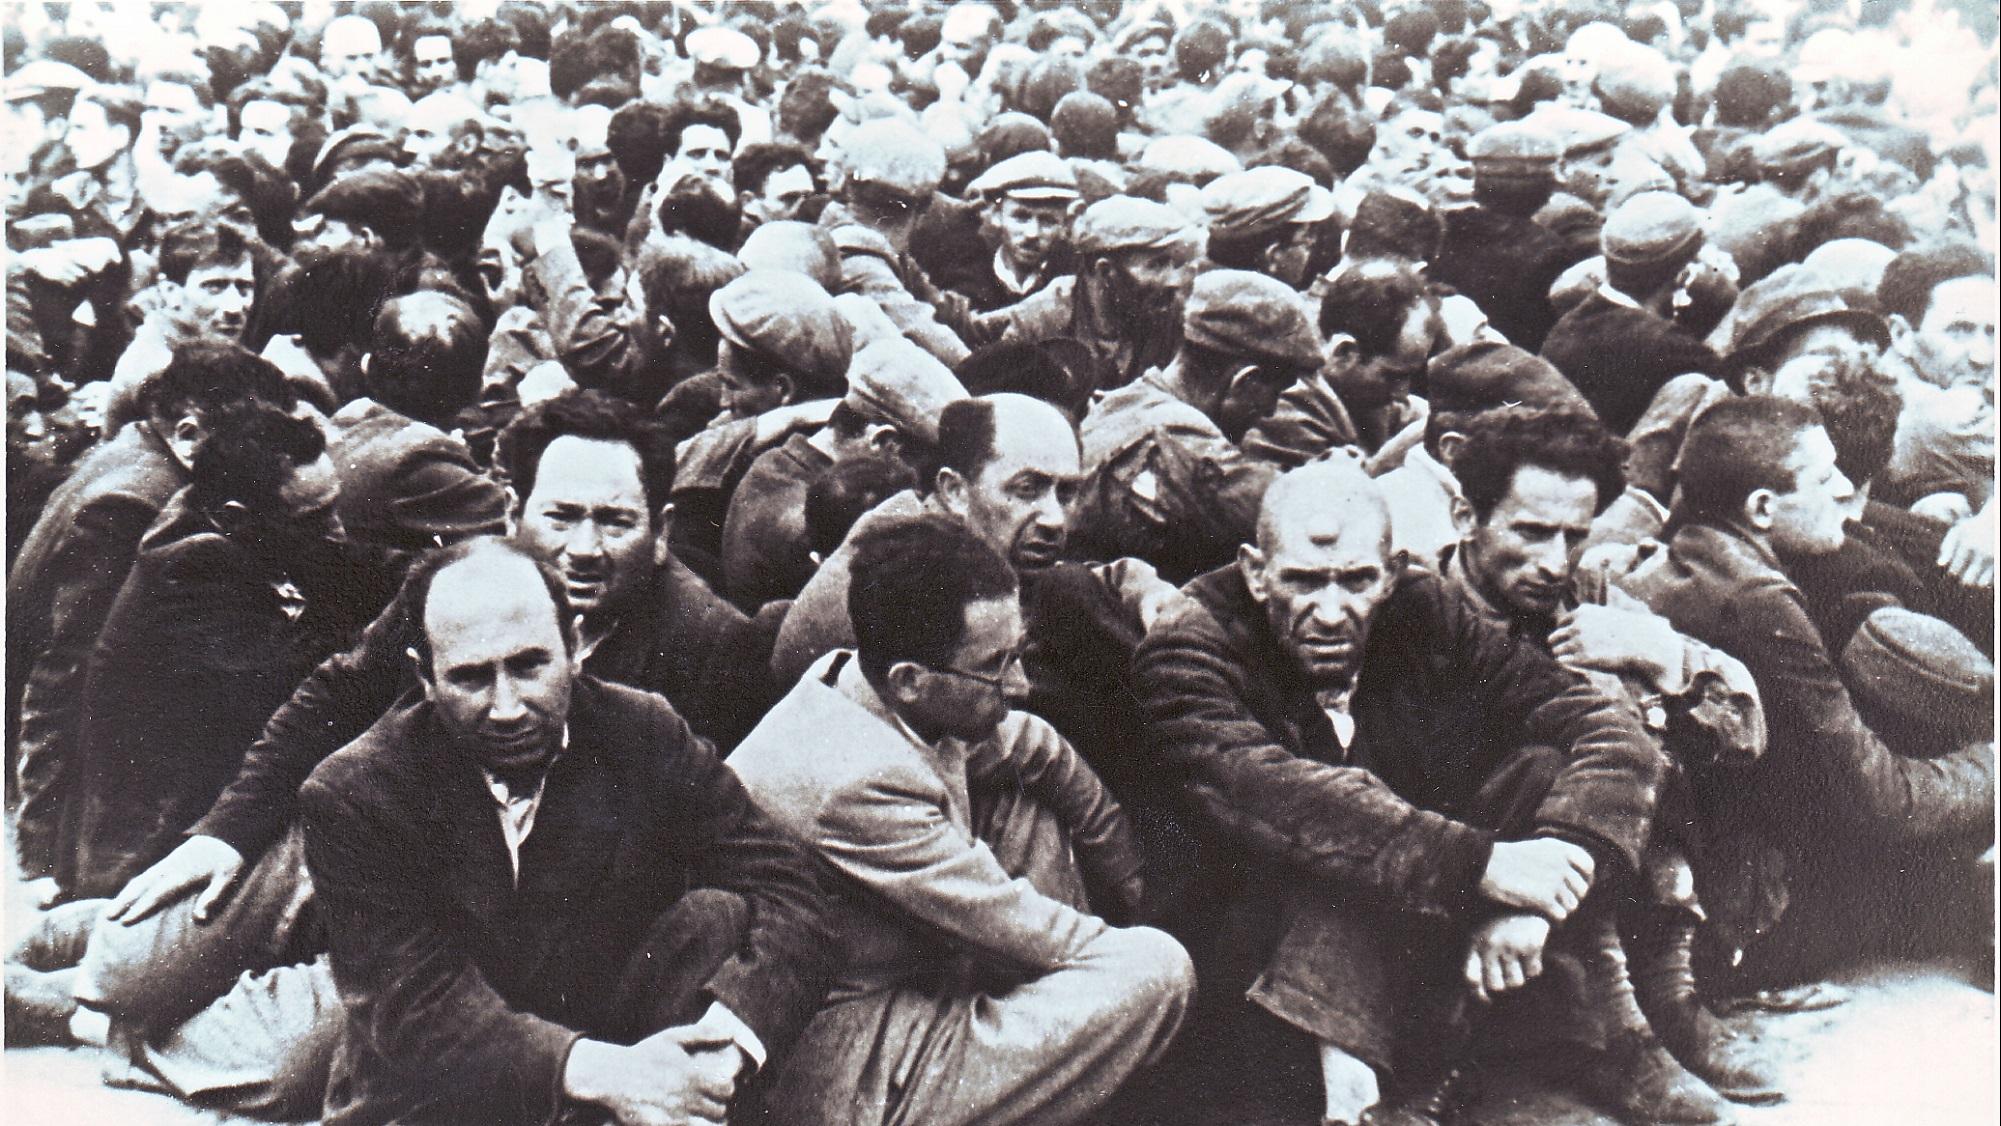 גברים יהודים באוקראינה ממתינים לגירושם, ארכיון מורשת